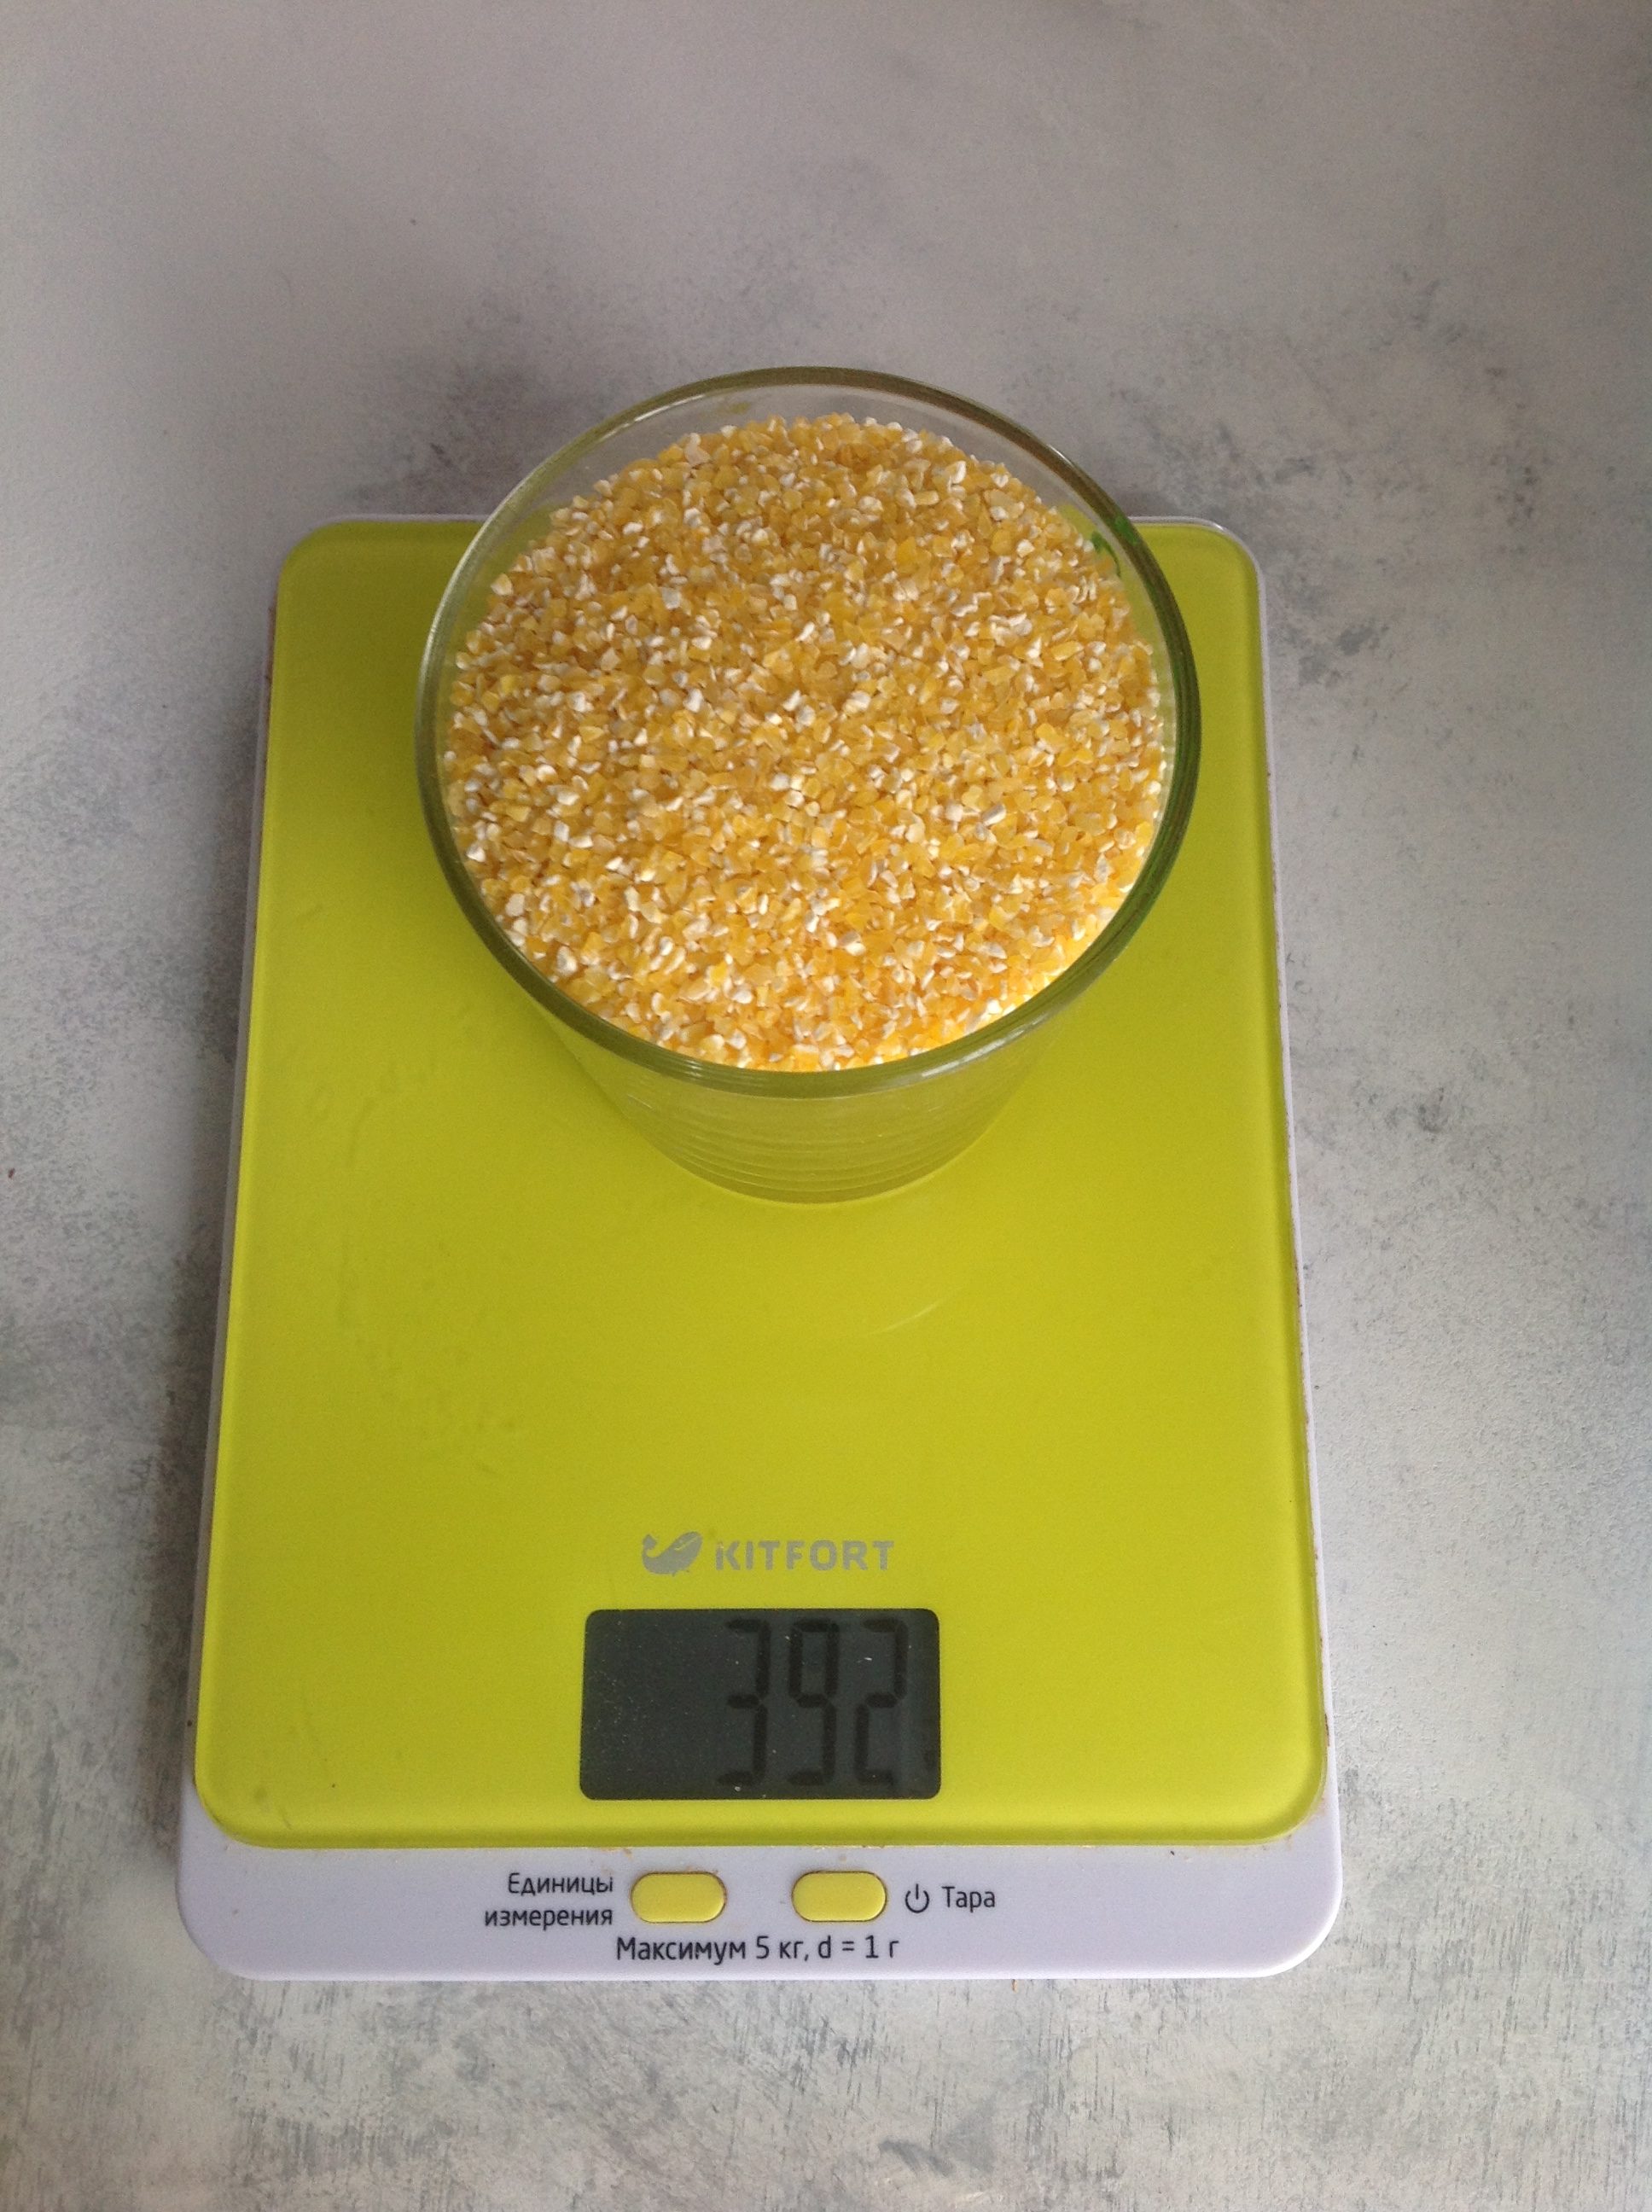 hmotnost sušené kukuřičné mouky ve sklenici o objemu 250 ml